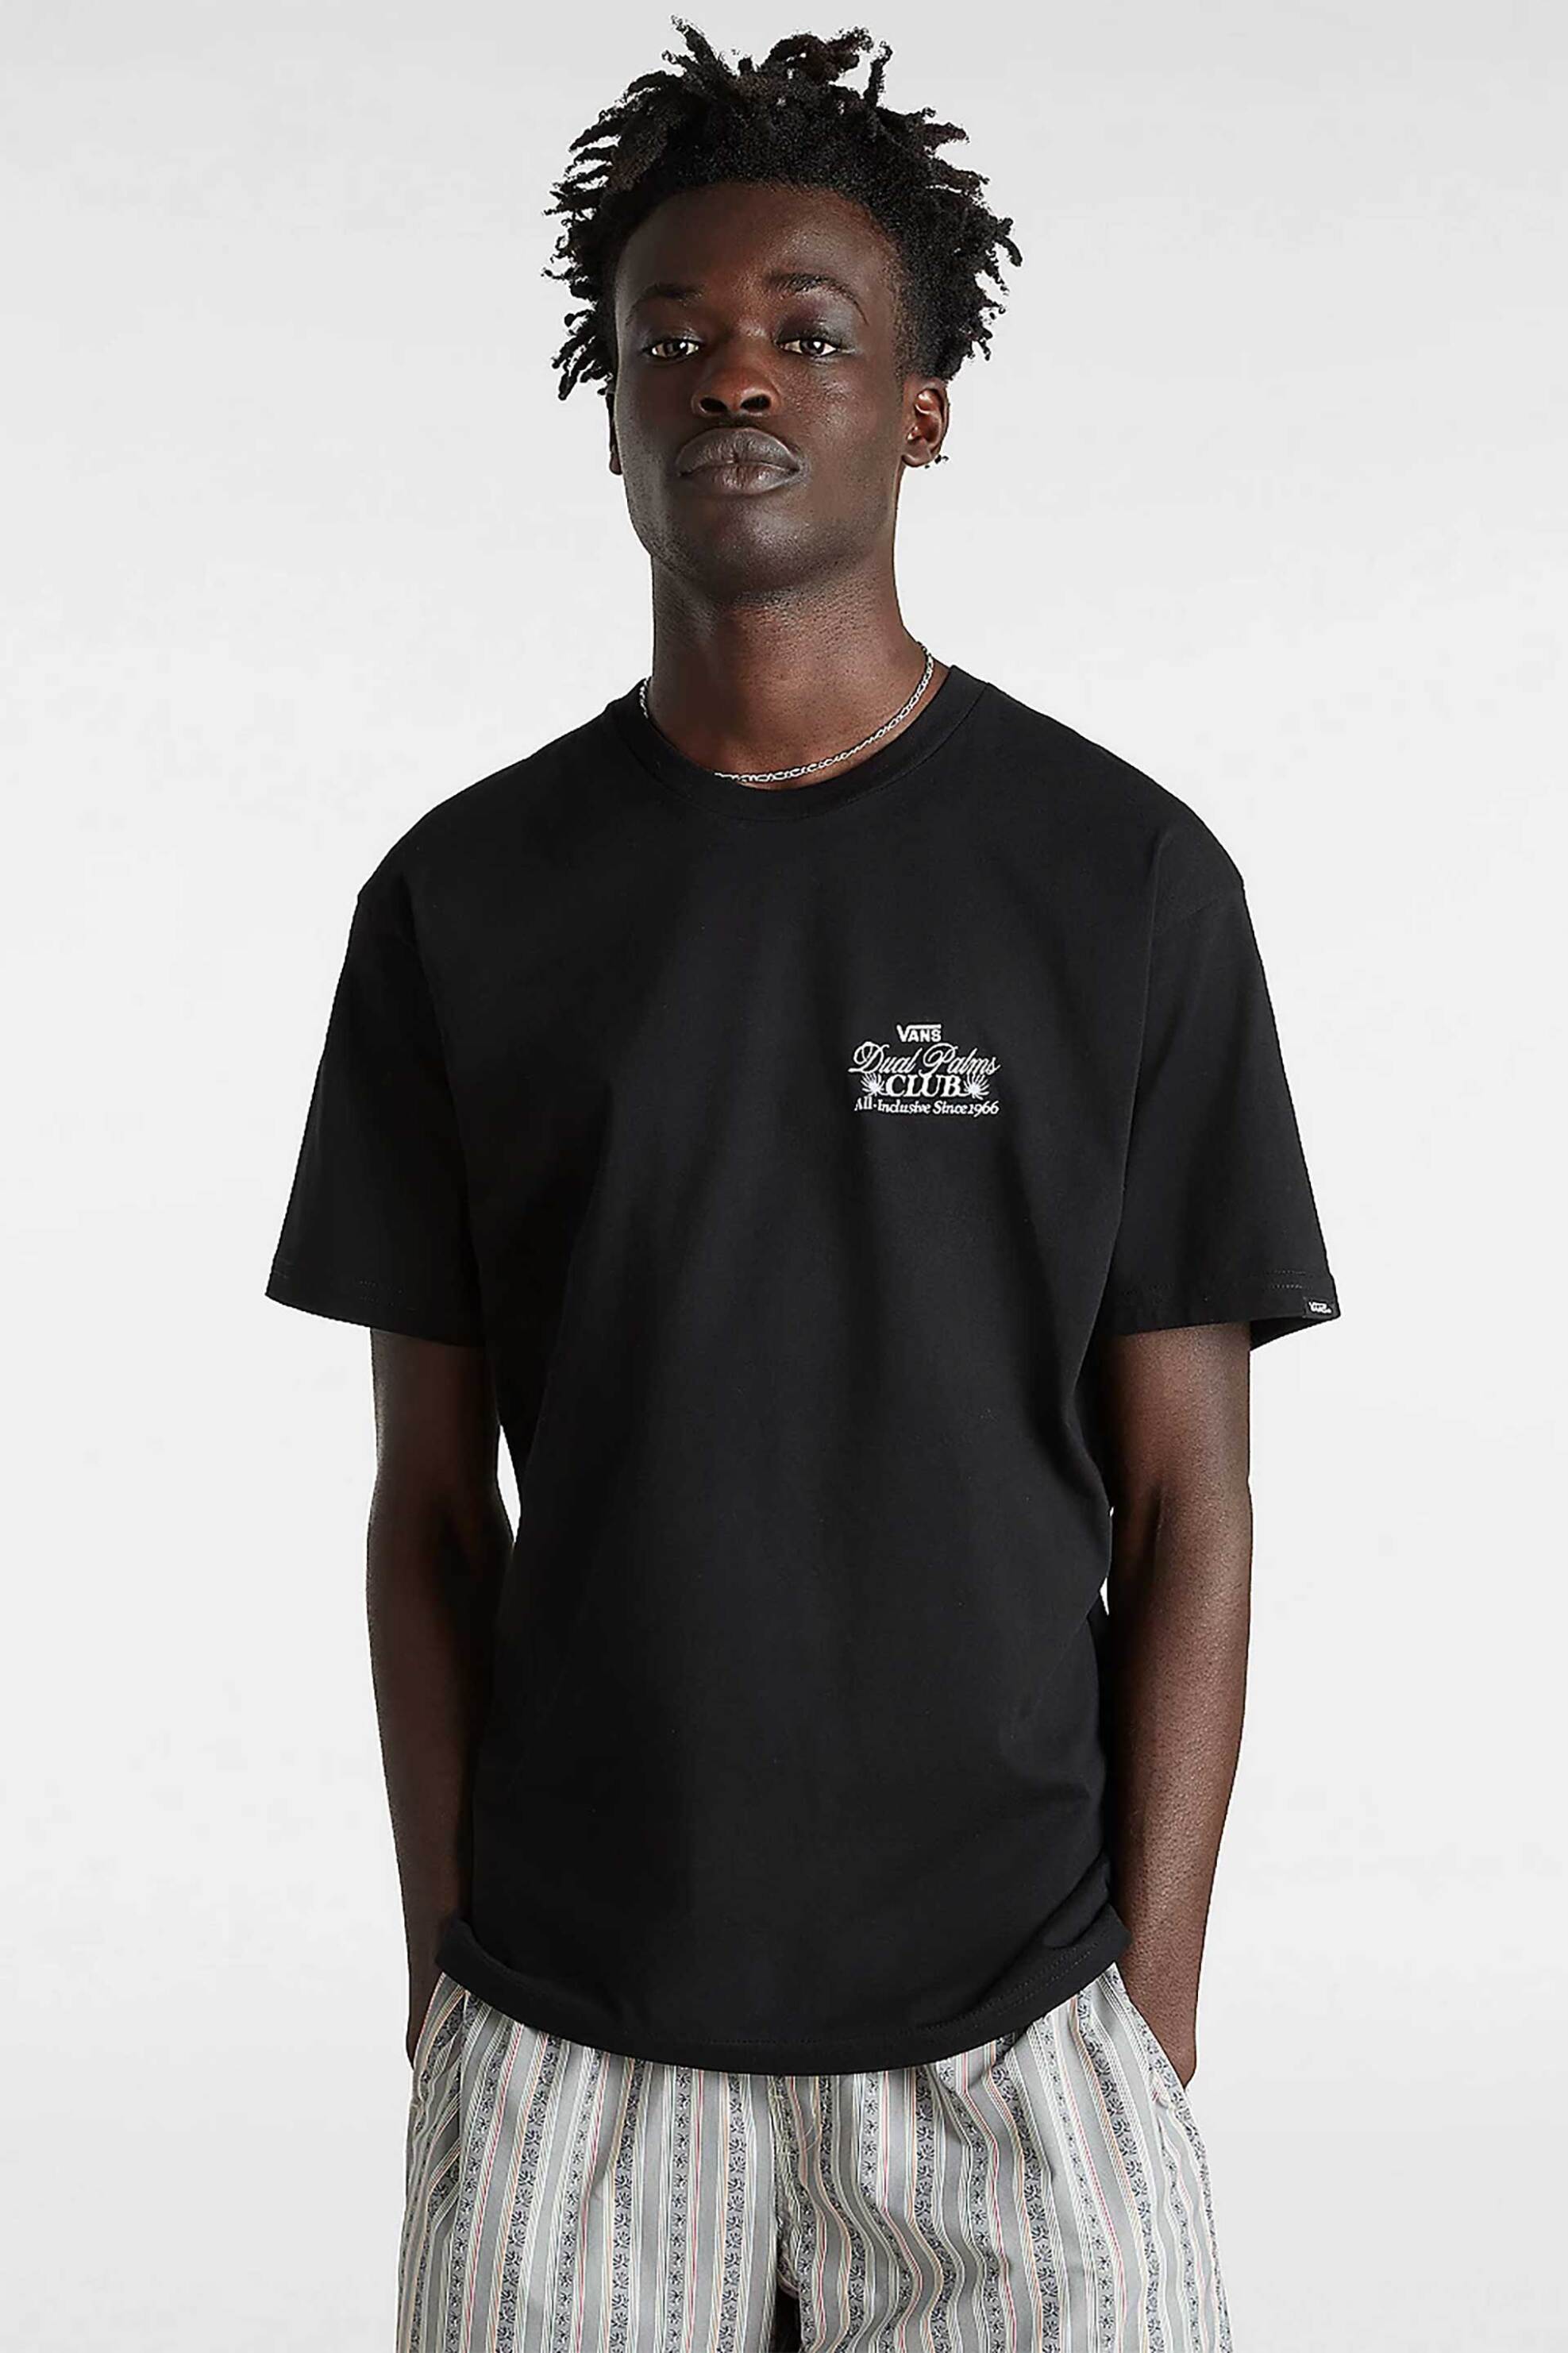 Ανδρική Μόδα > Ανδρικά Ρούχα > Ανδρικές Μπλούζες > Ανδρικά T-Shirts Vans ανδρικό T-shirt με print "Dual Palms Club" - VN000G5MBLK1 Μαύρο